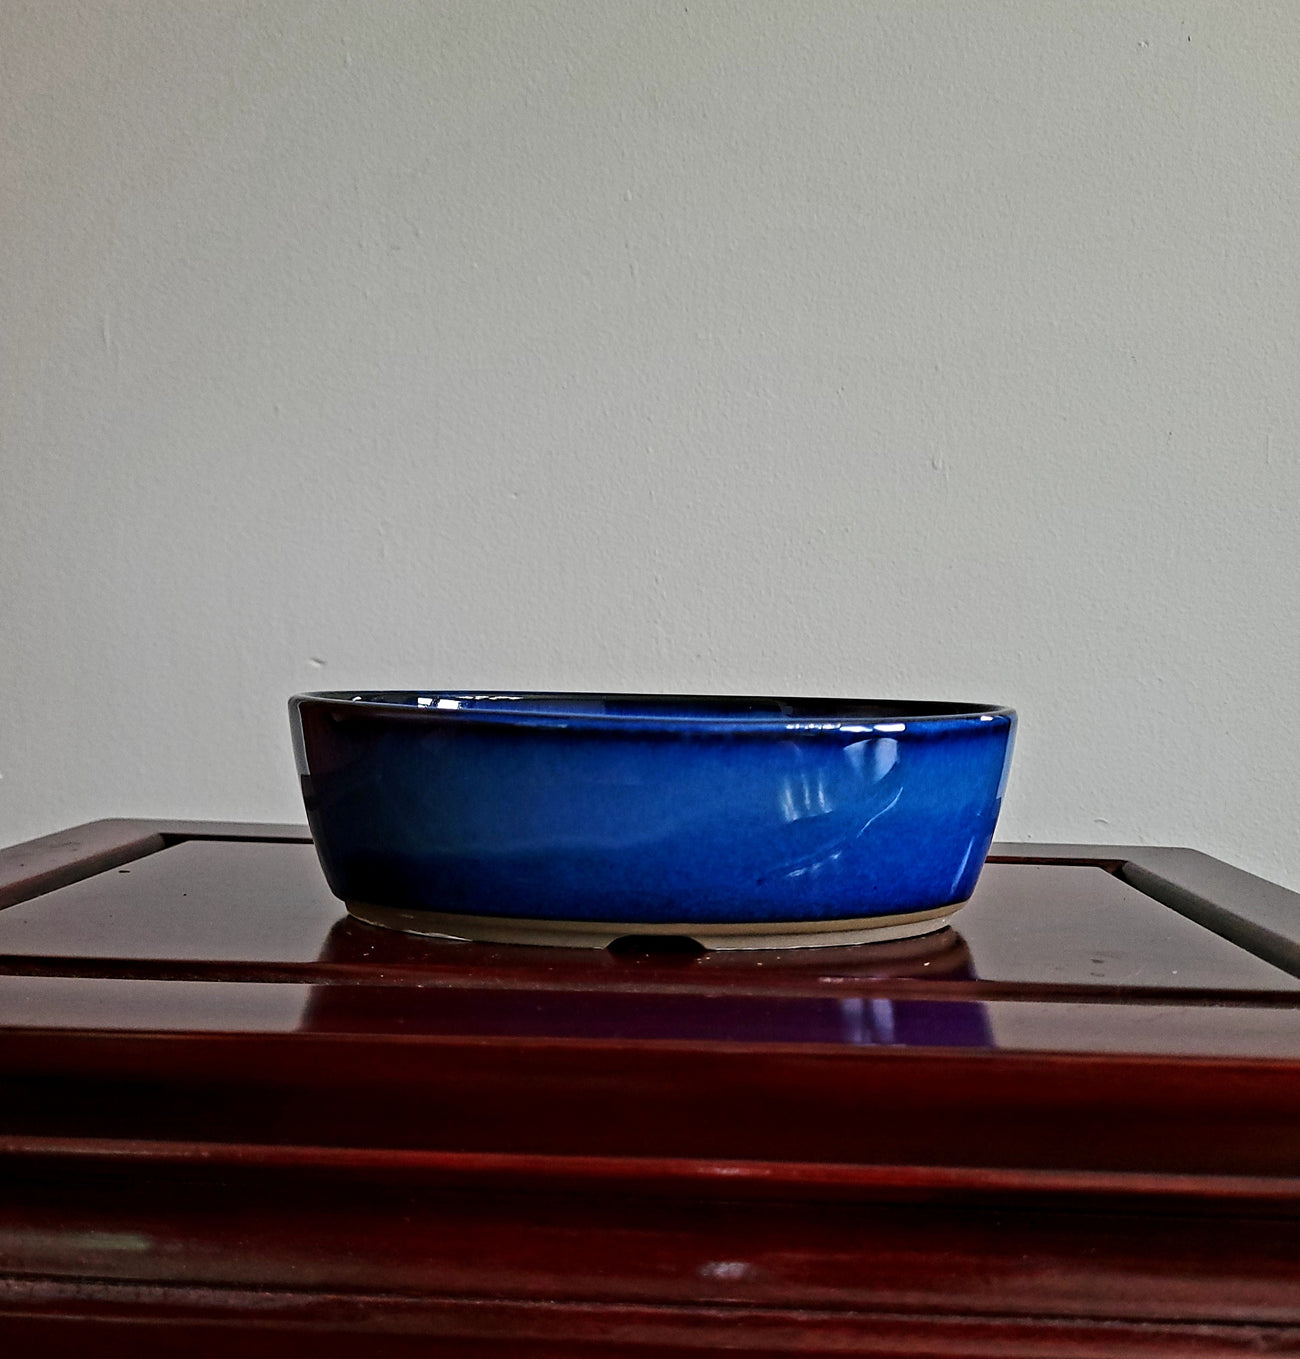 6" Lovely Japanese blue oval pot